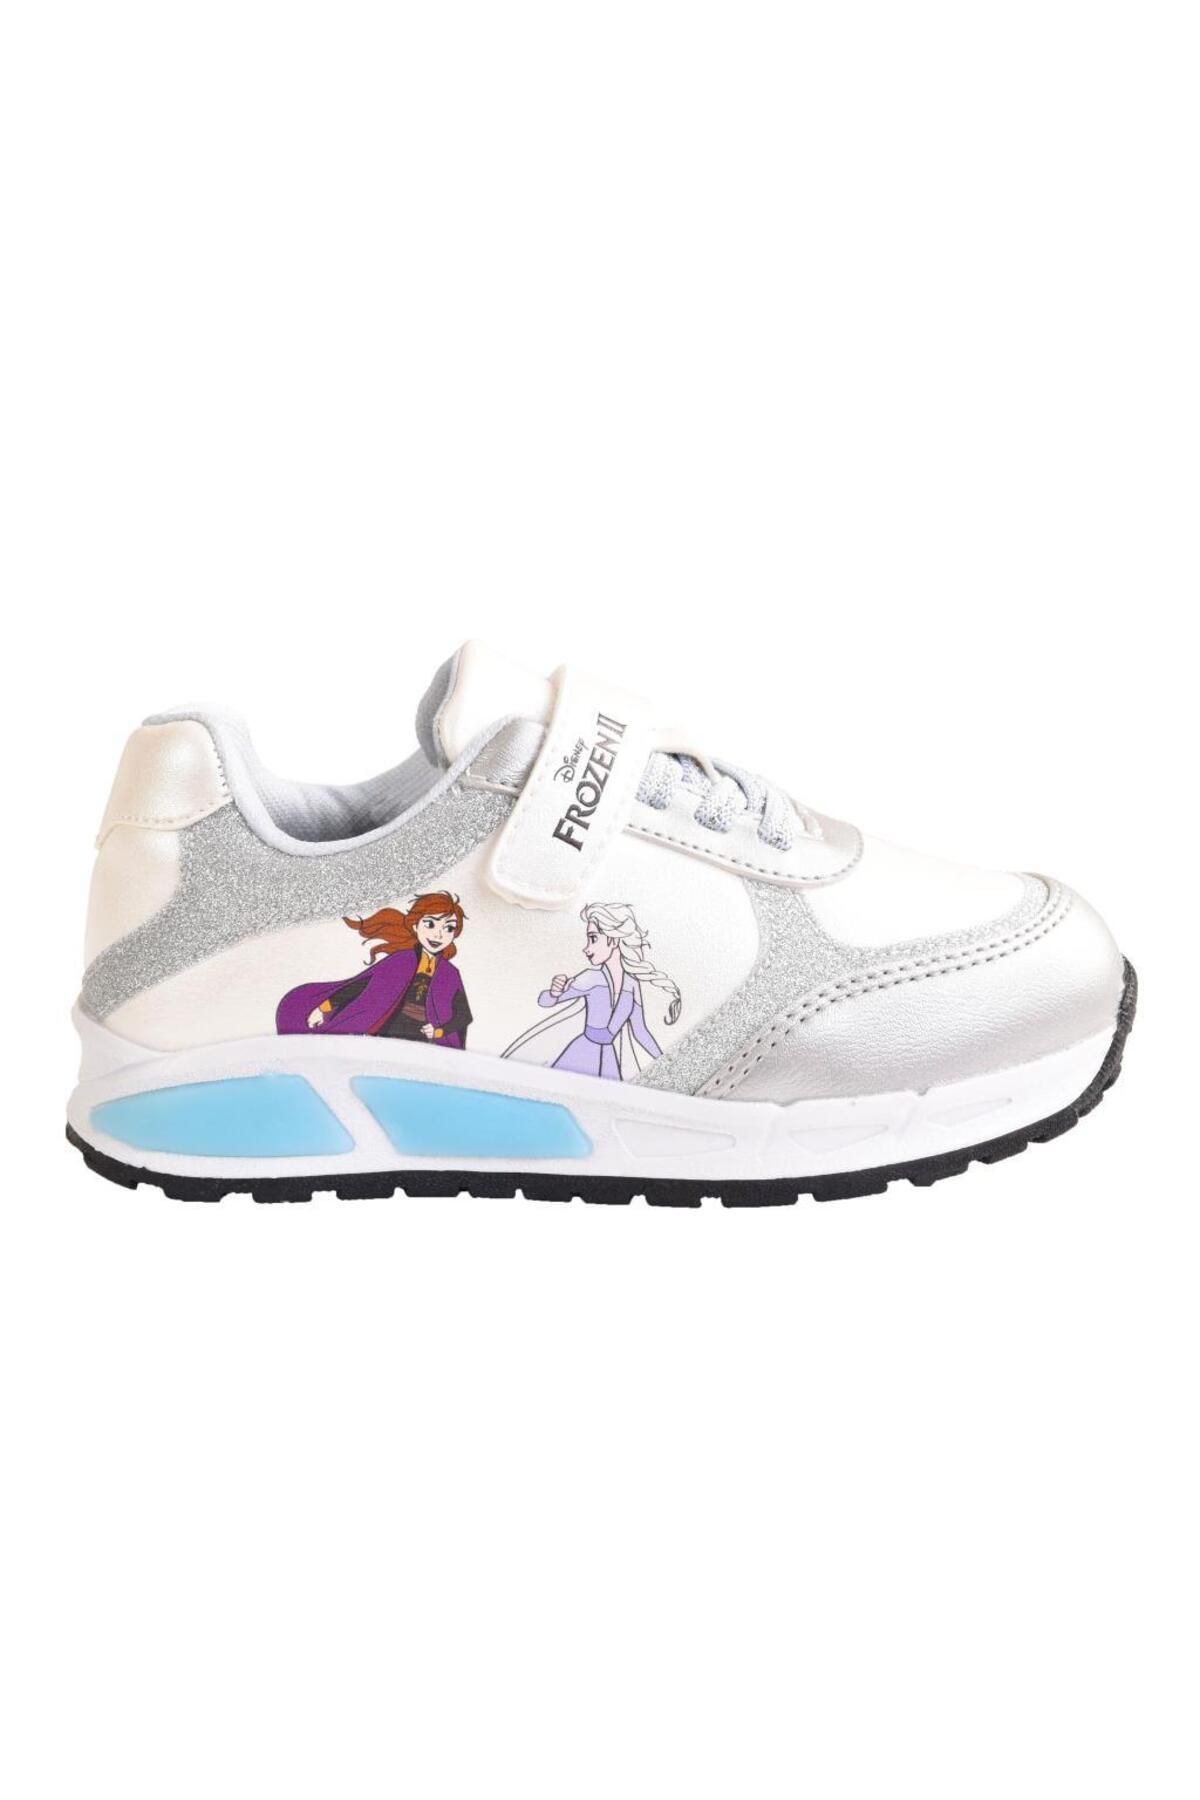 Frozen Kız Çocuk Işıklı Spor Ayakkabı / Ellaboni Elsa Anna Işıklı Sneakers